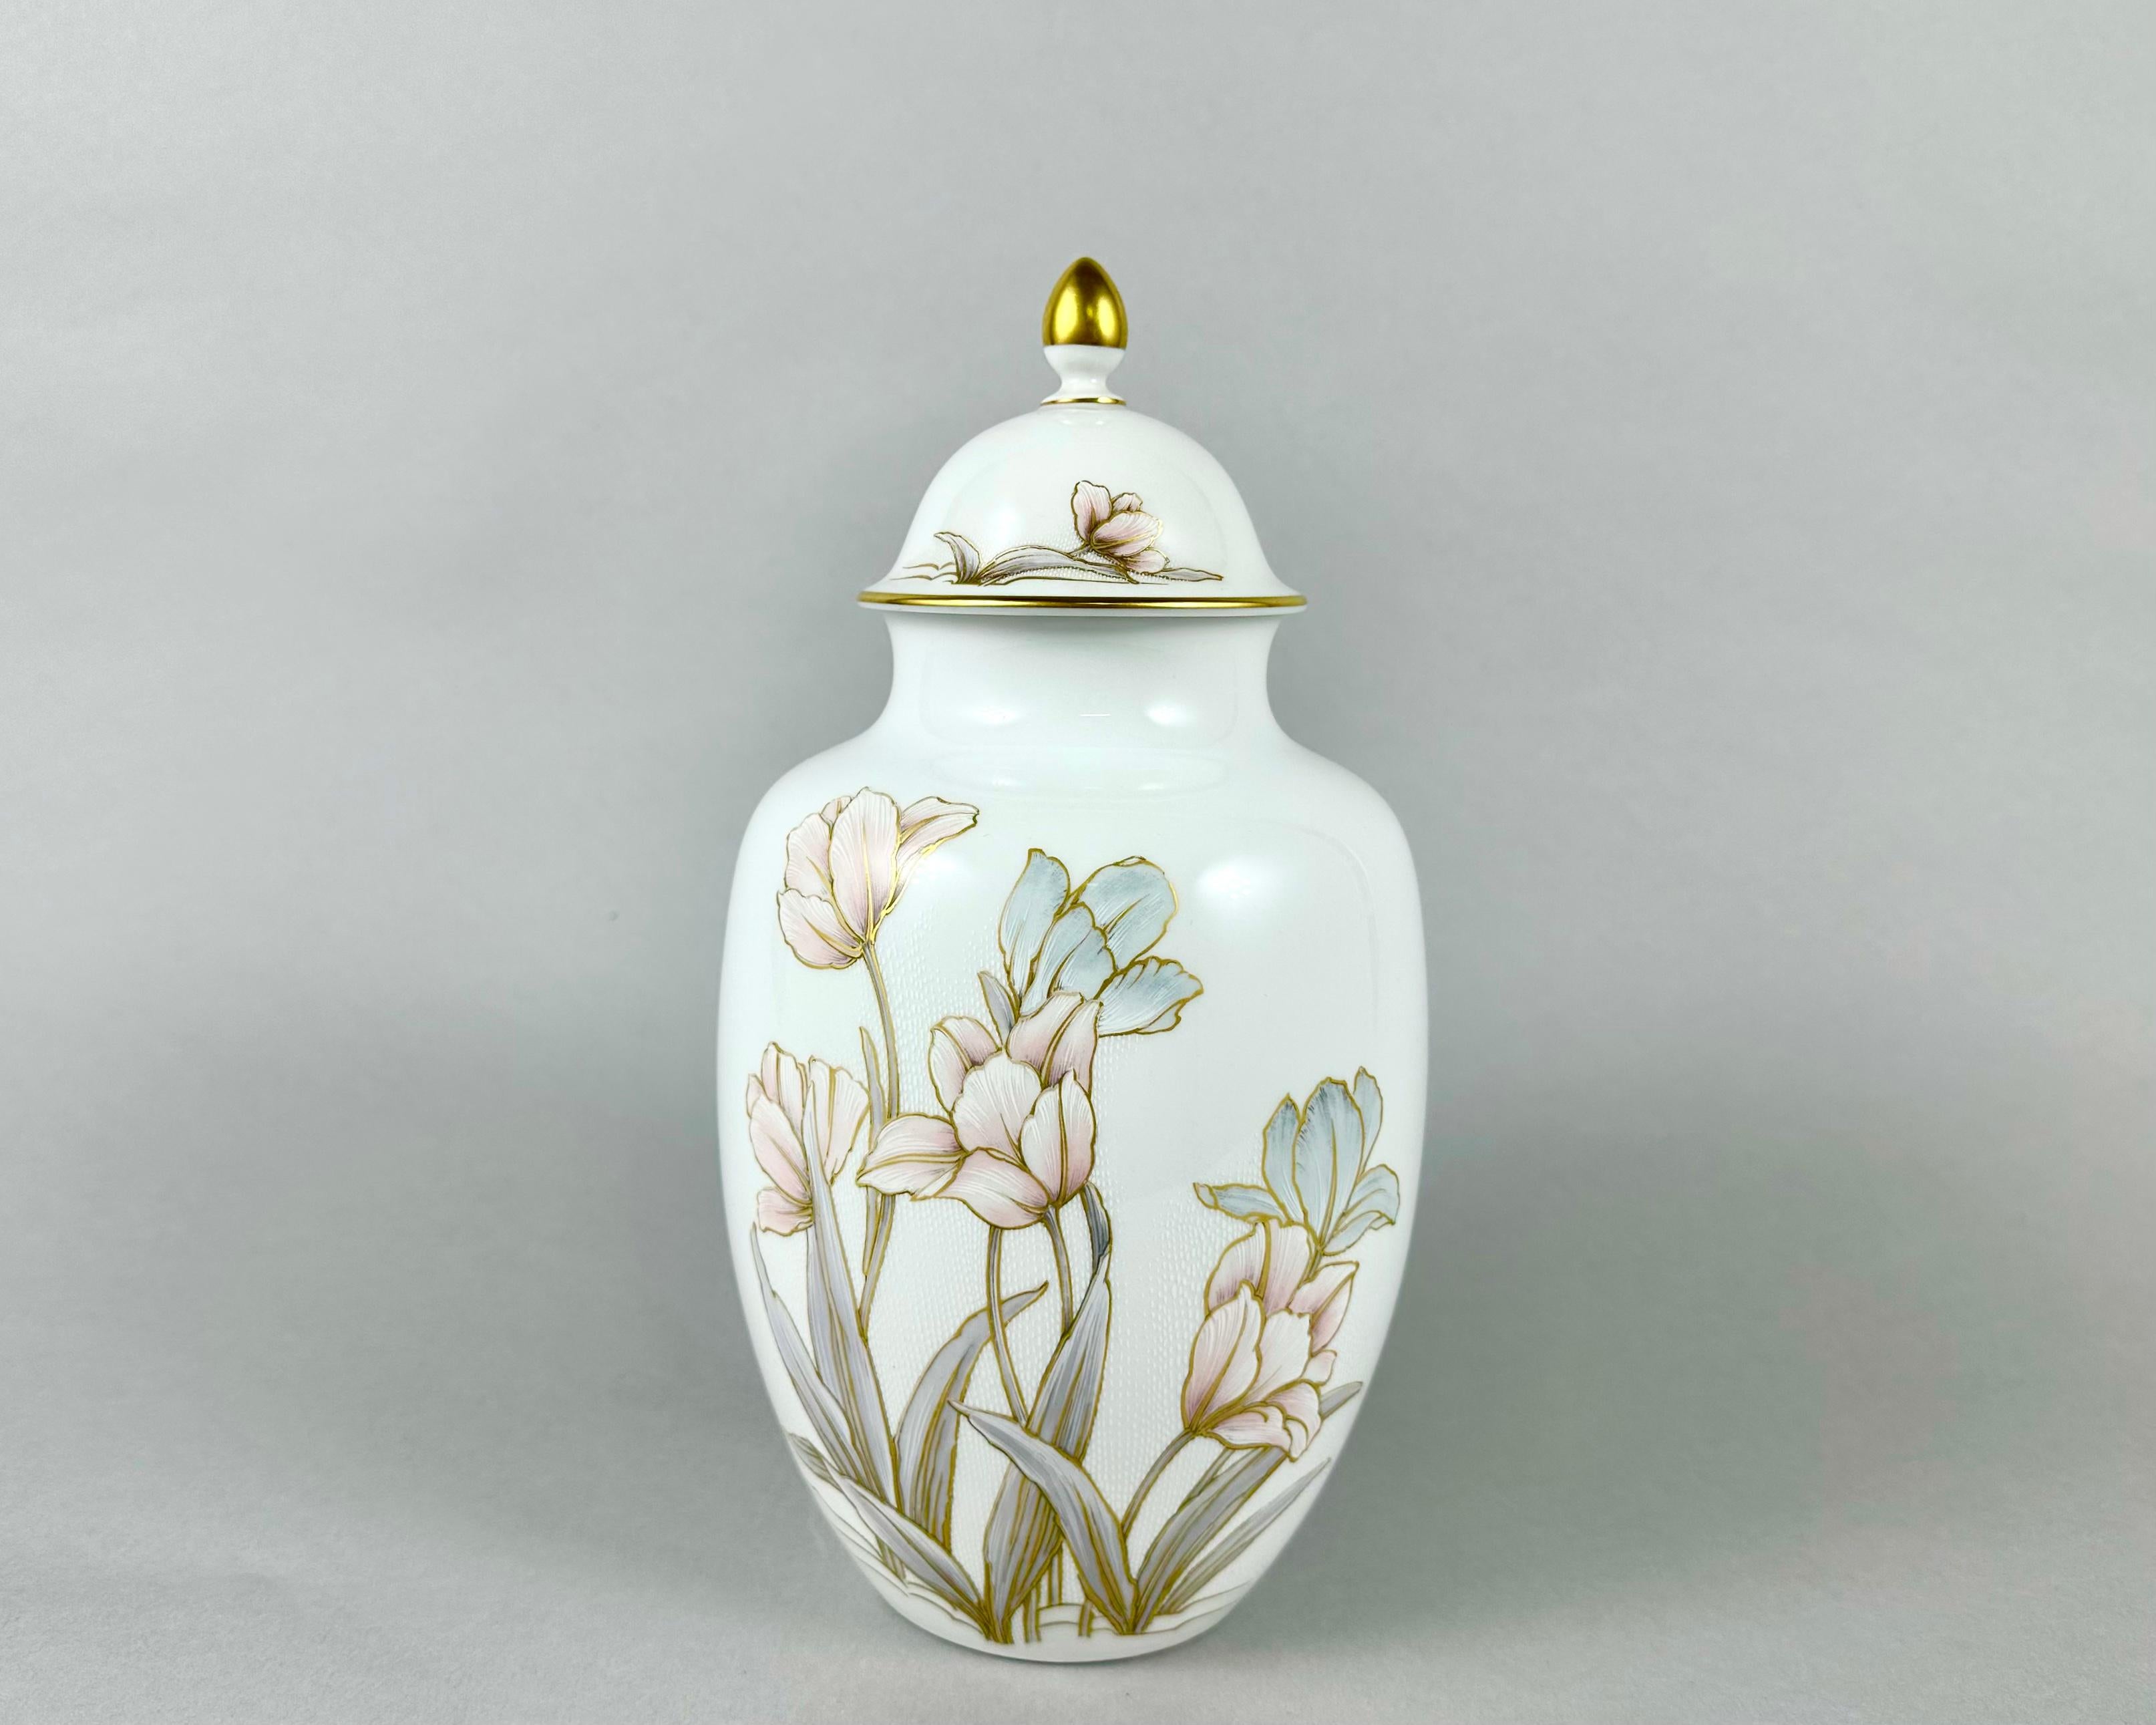 Schöne Innenvase aus hochwertigem Elite-Porzellan von Kaiser, Serie Eleonore.

Die Vase wurde von der Designerin K. K. bemalt. Nossek. Seine Designlösungen ziehen immer die Aufmerksamkeit auf sich, und seine Arbeit hat einen hohen